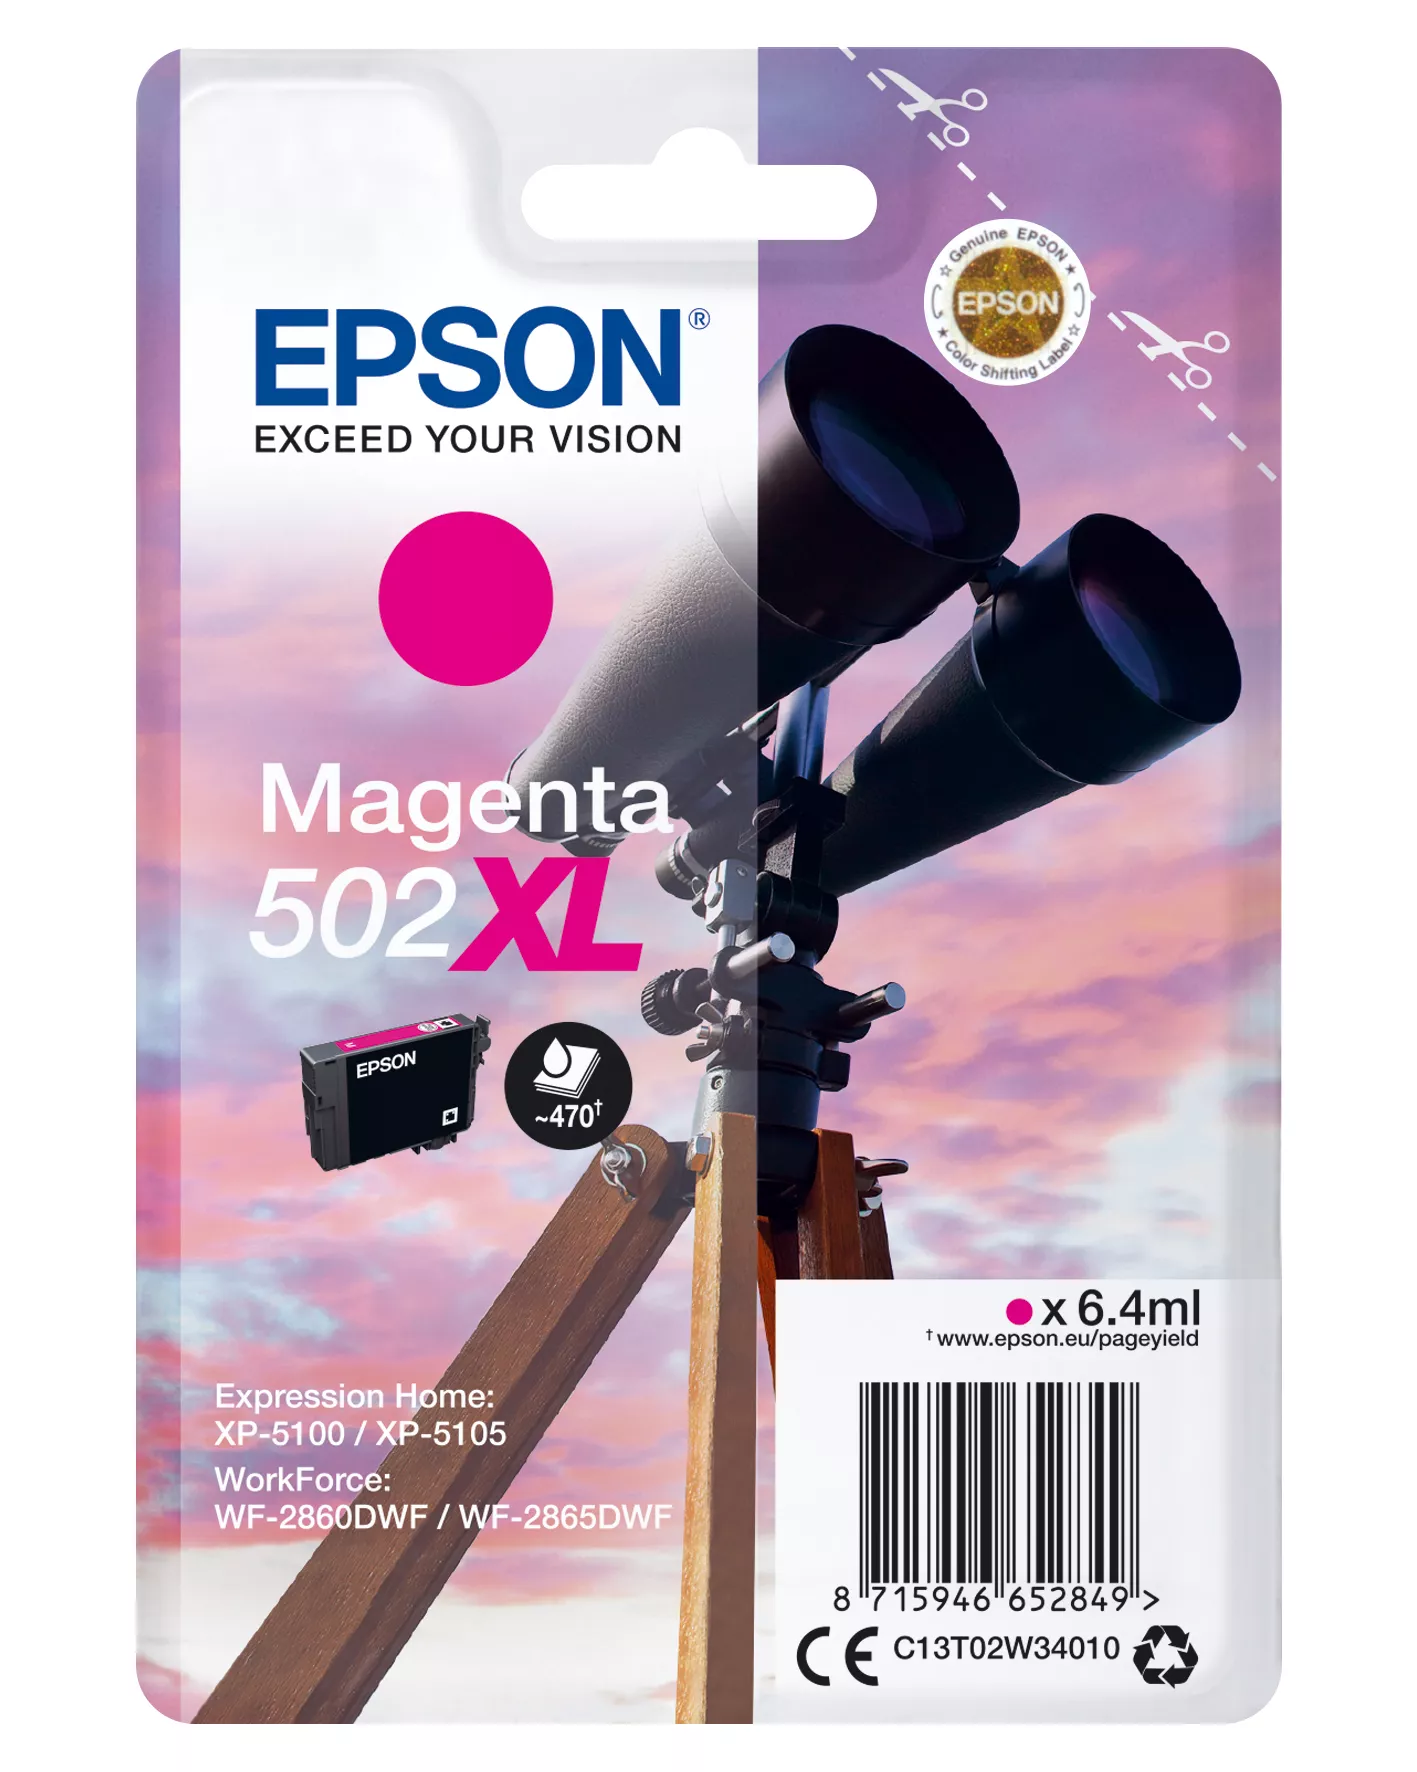 Vente Cartouches d'encre EPSON Singlepack Magenta 502XL Ink sur hello RSE